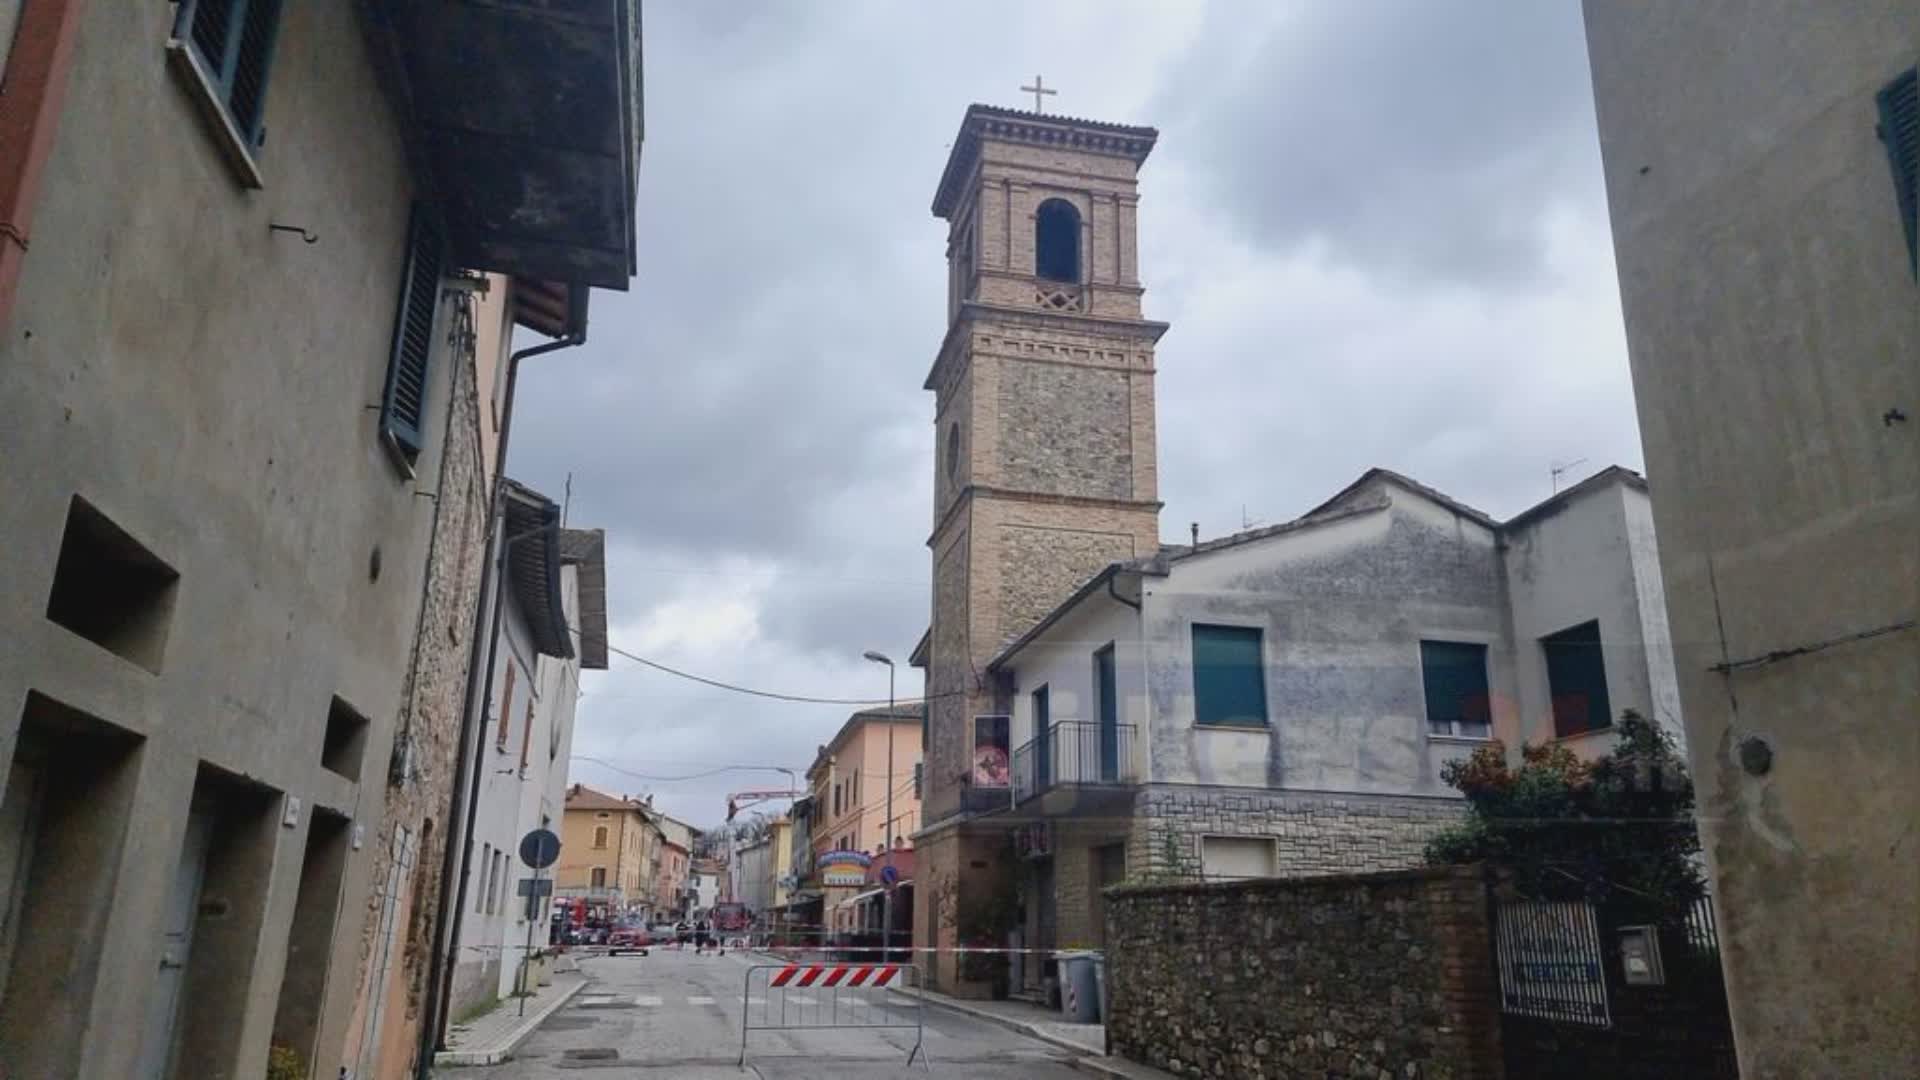 Abi, proroga sospensione mutui per sisma in Umbria e Marche